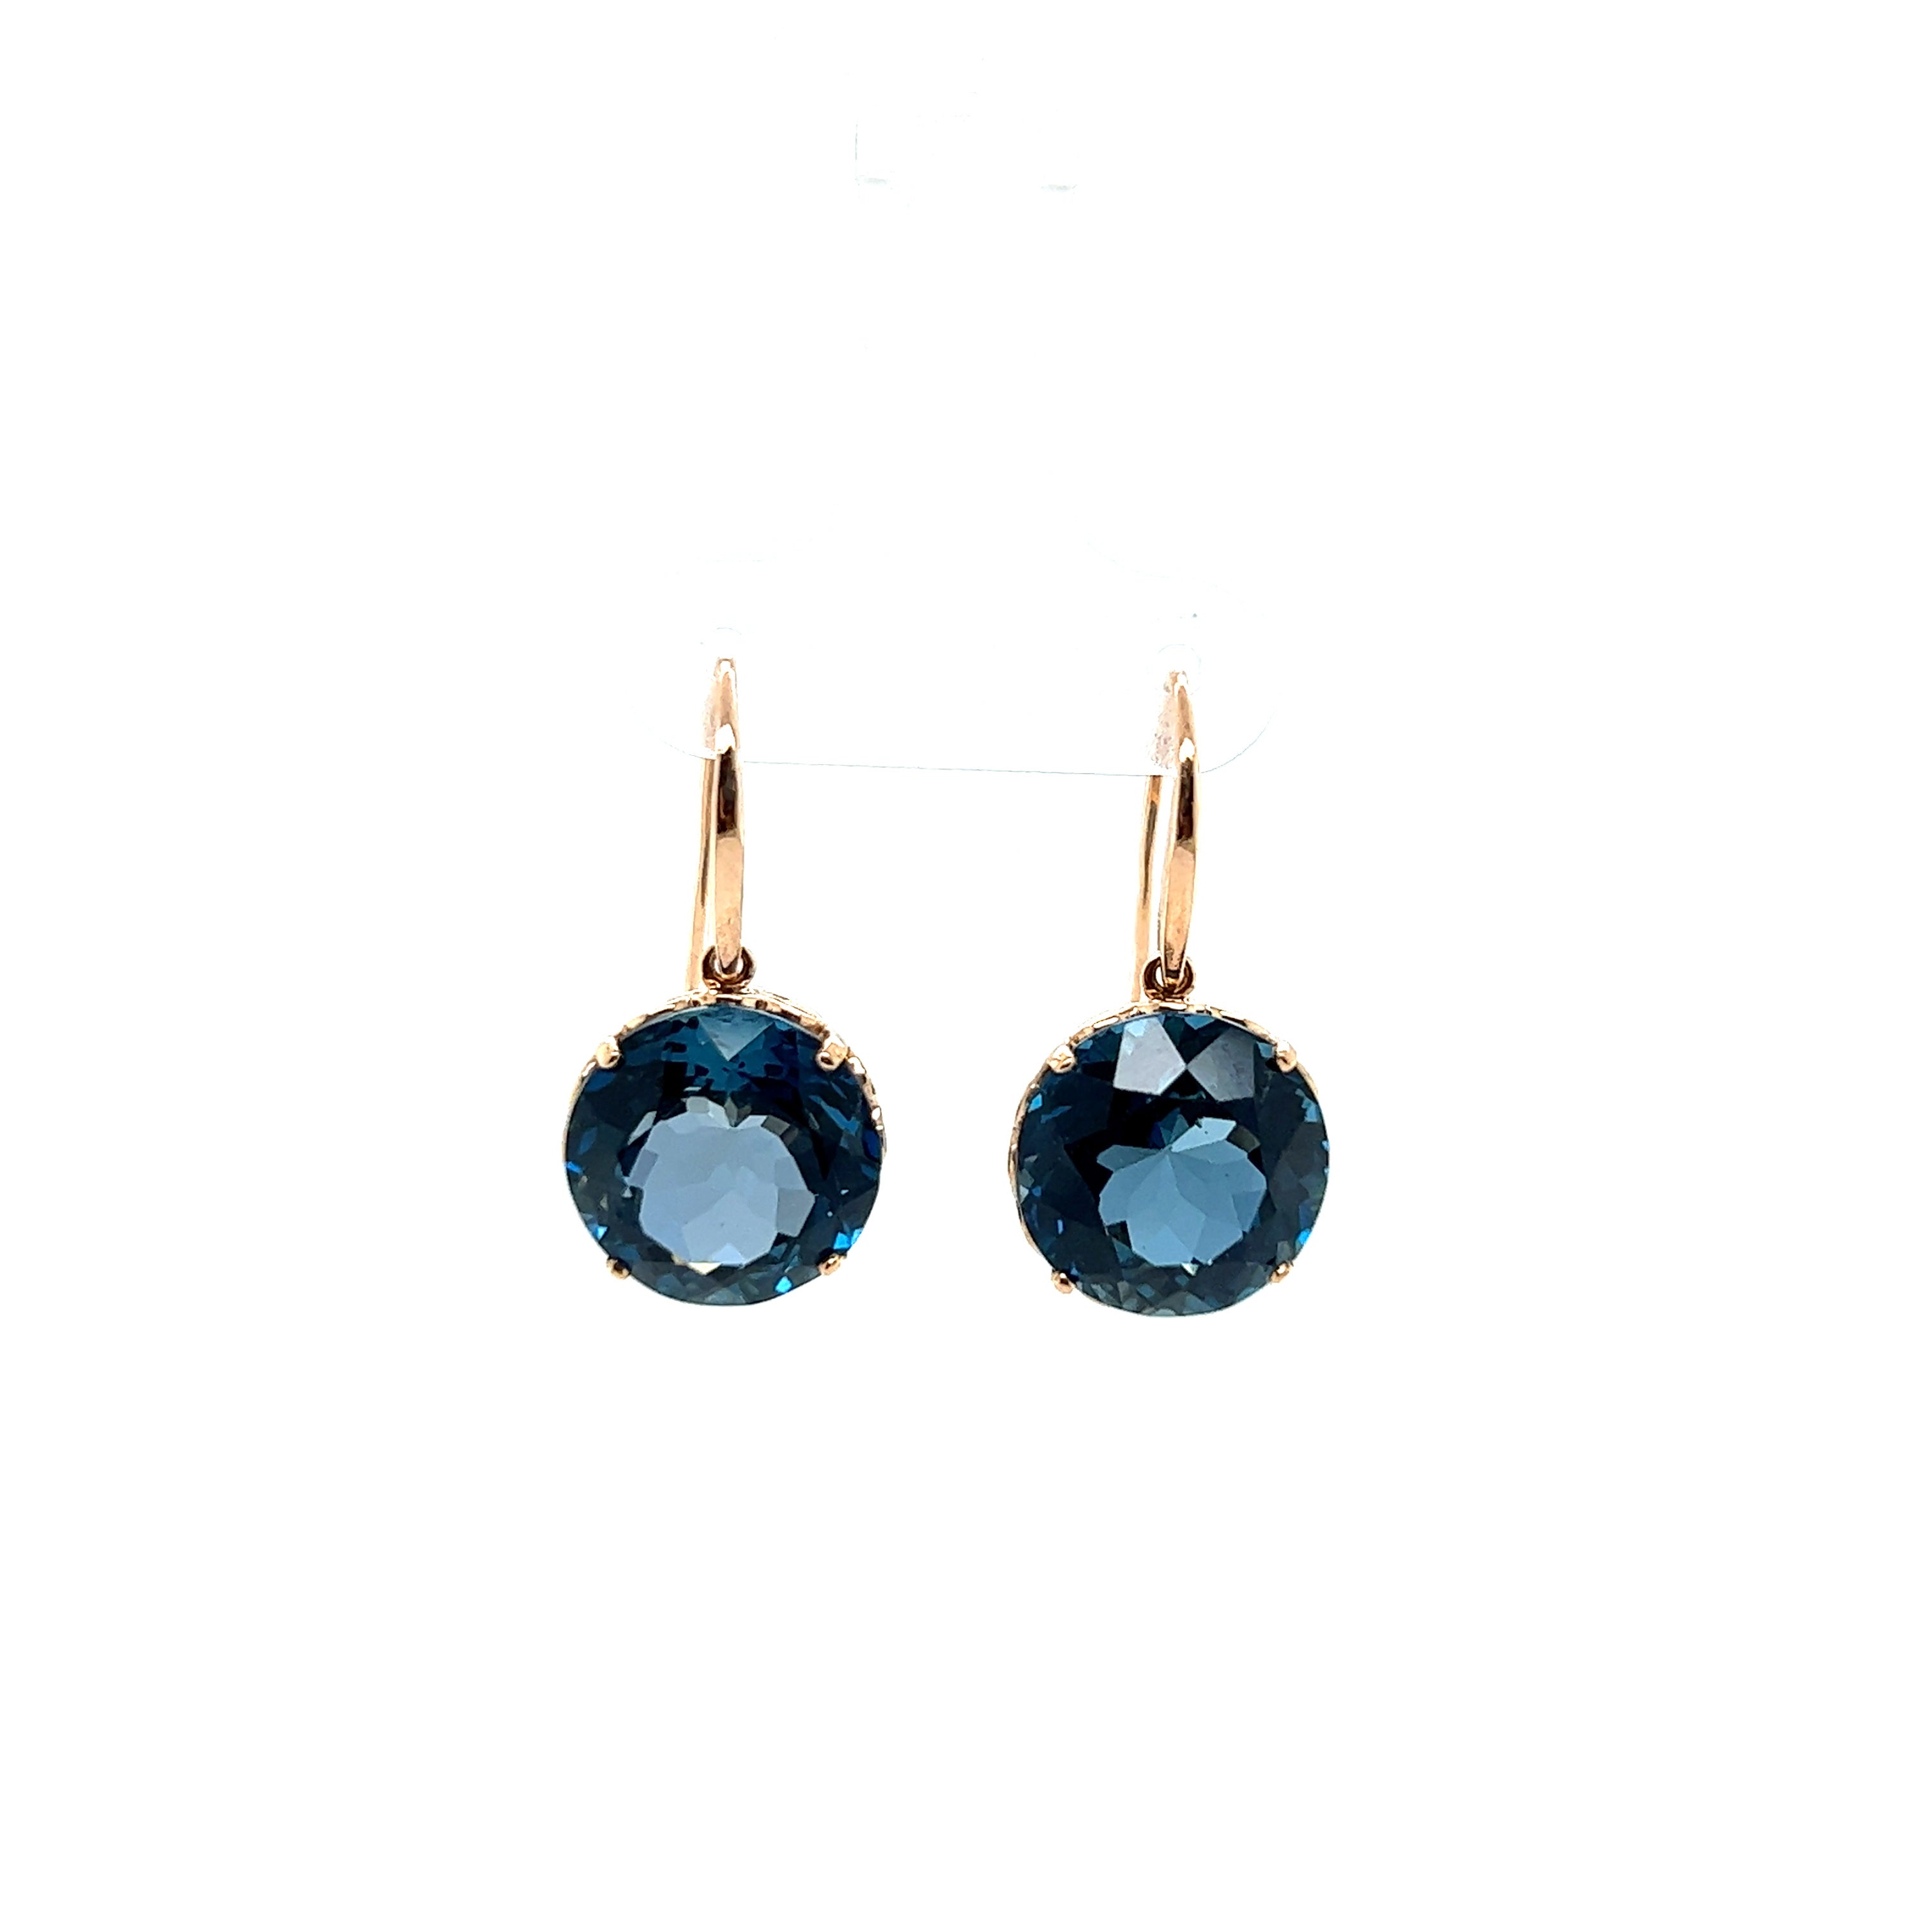 9ct rose gold London blue topaz earrings.